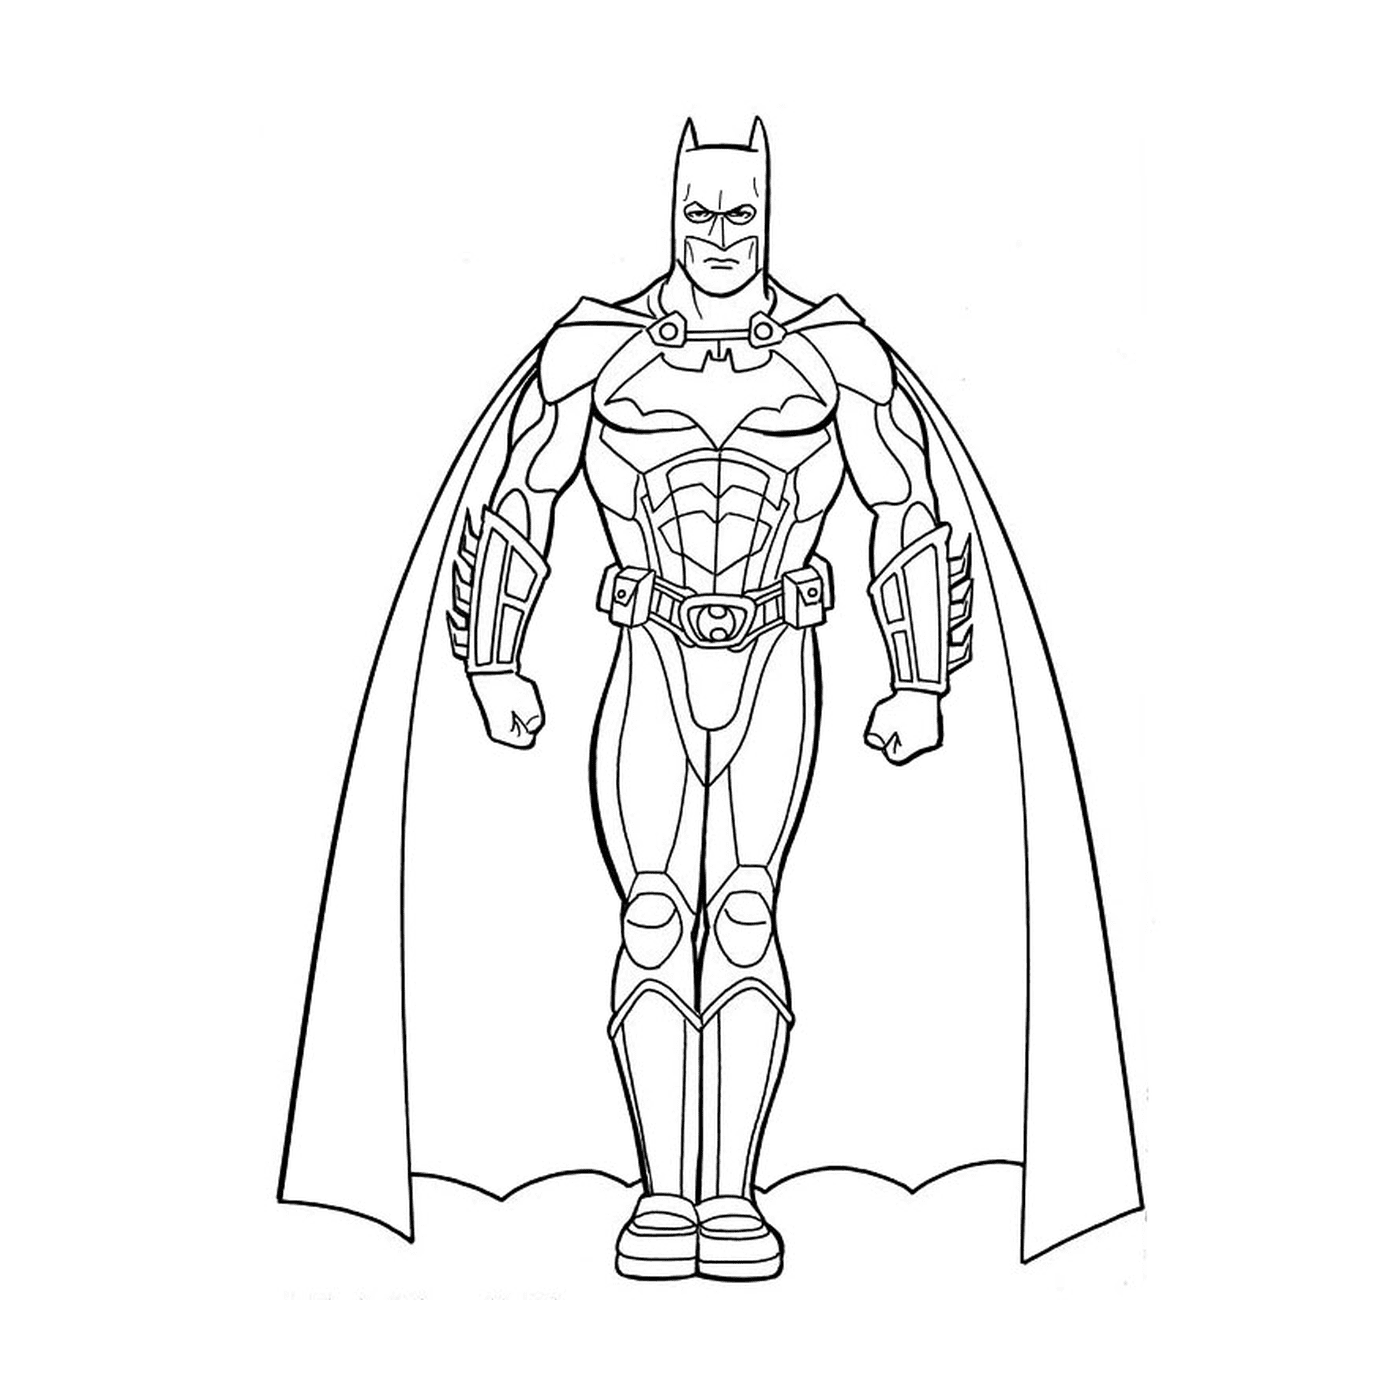  A man in Batman's suit 